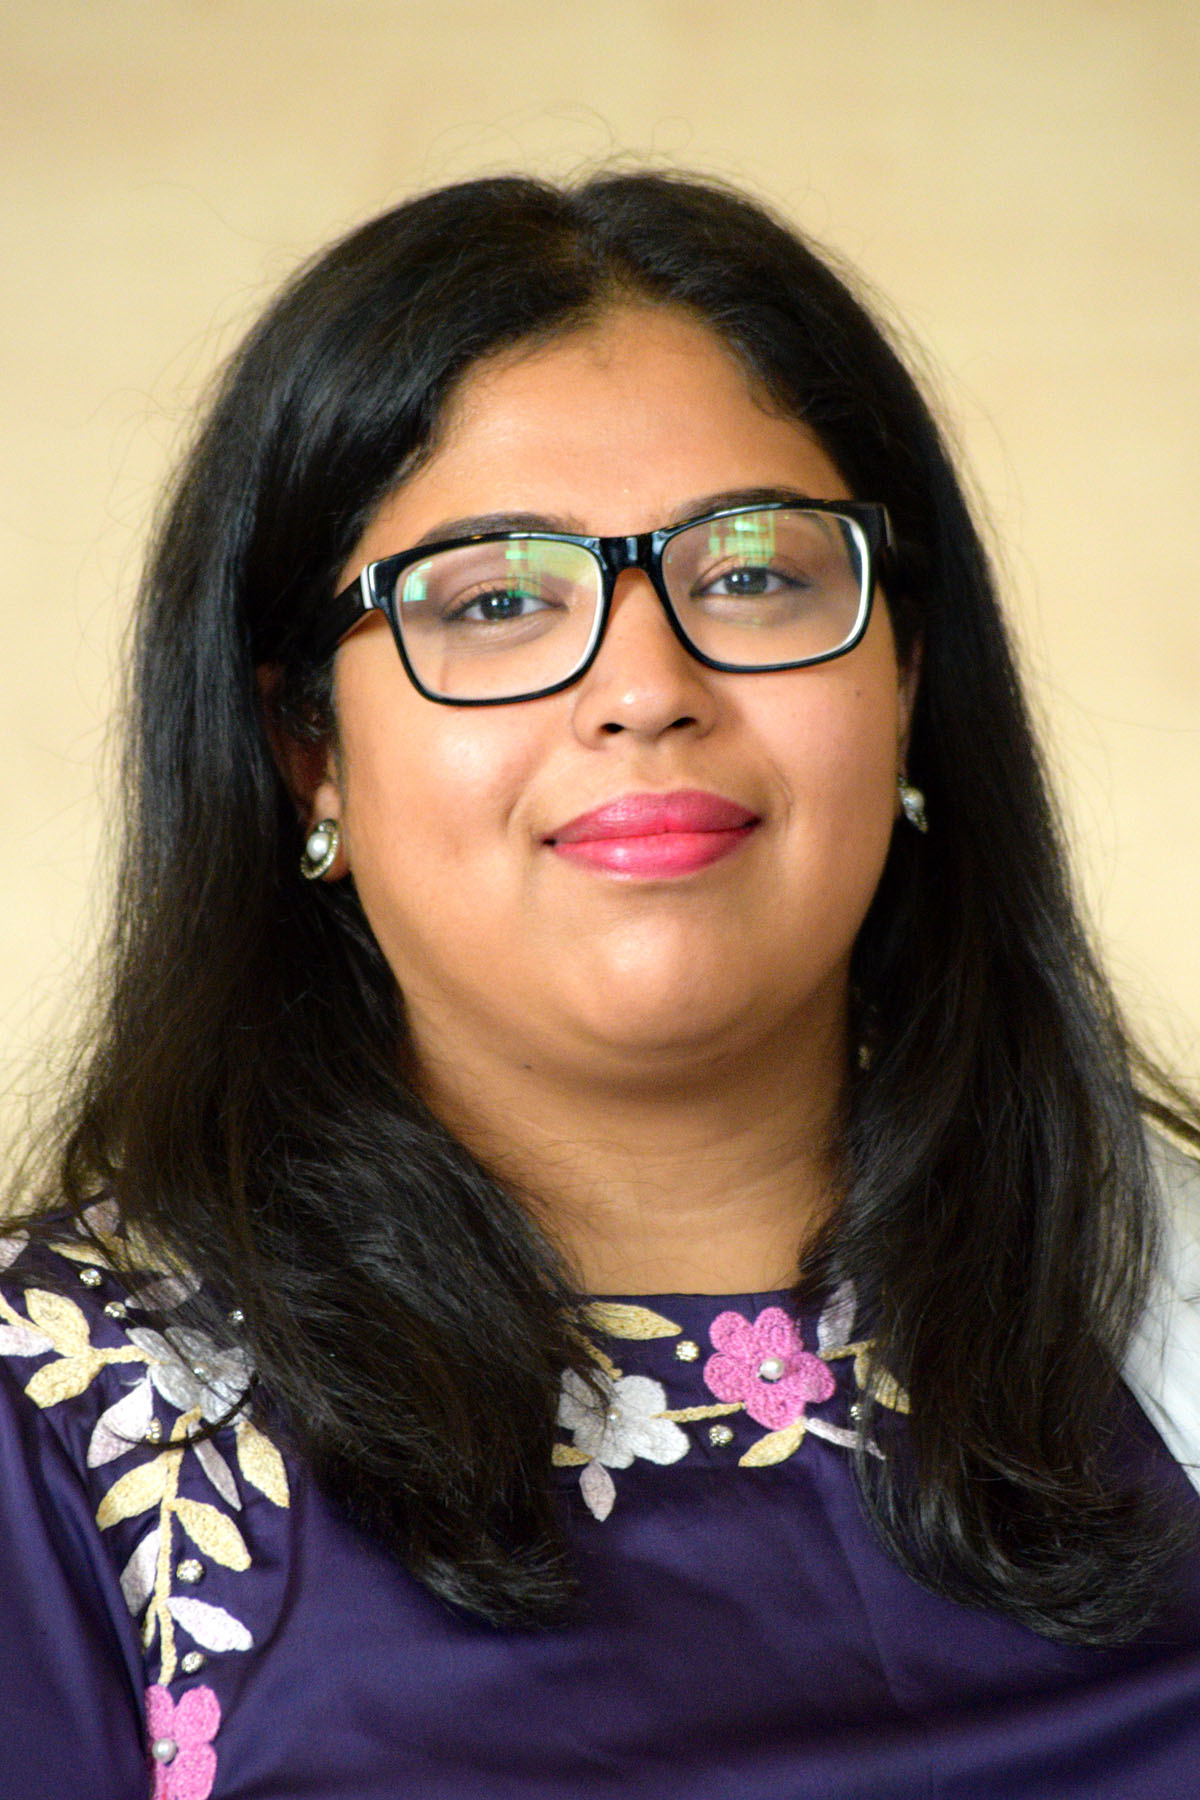 Anika Farzeen Chowdhury